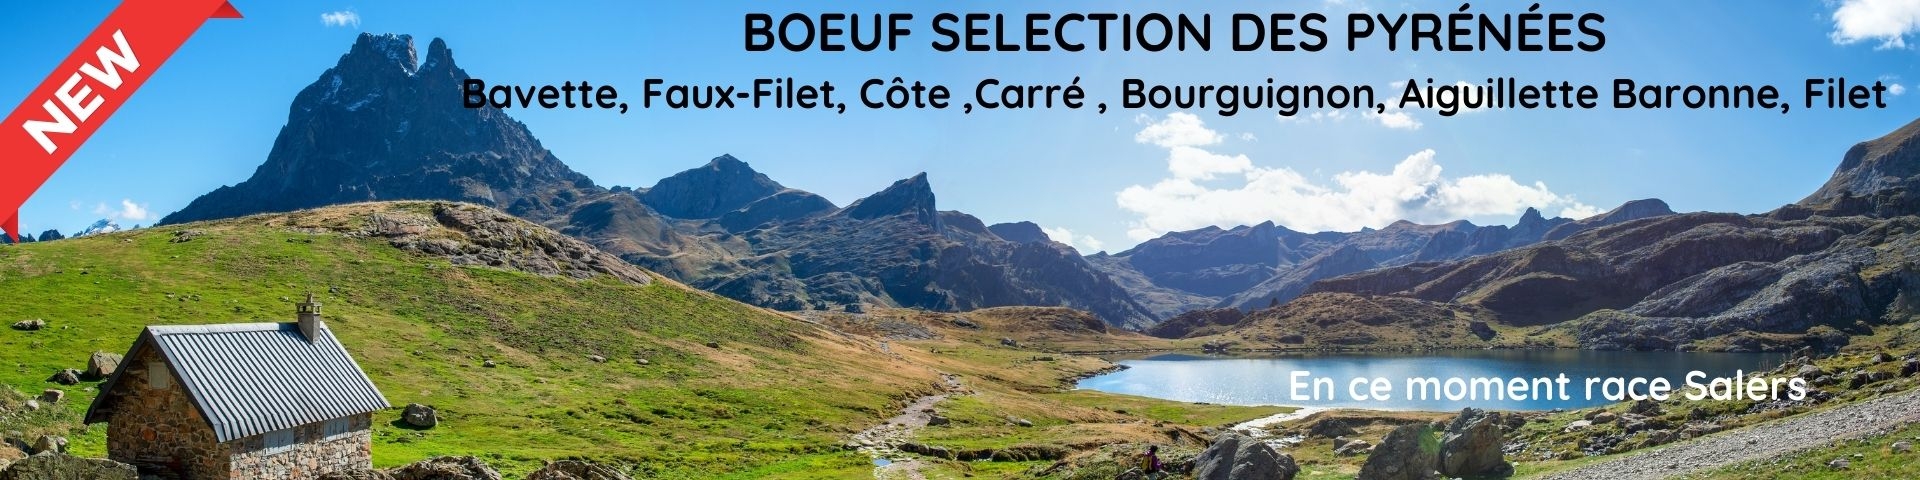 Boeuf Sélection des Pyrénées